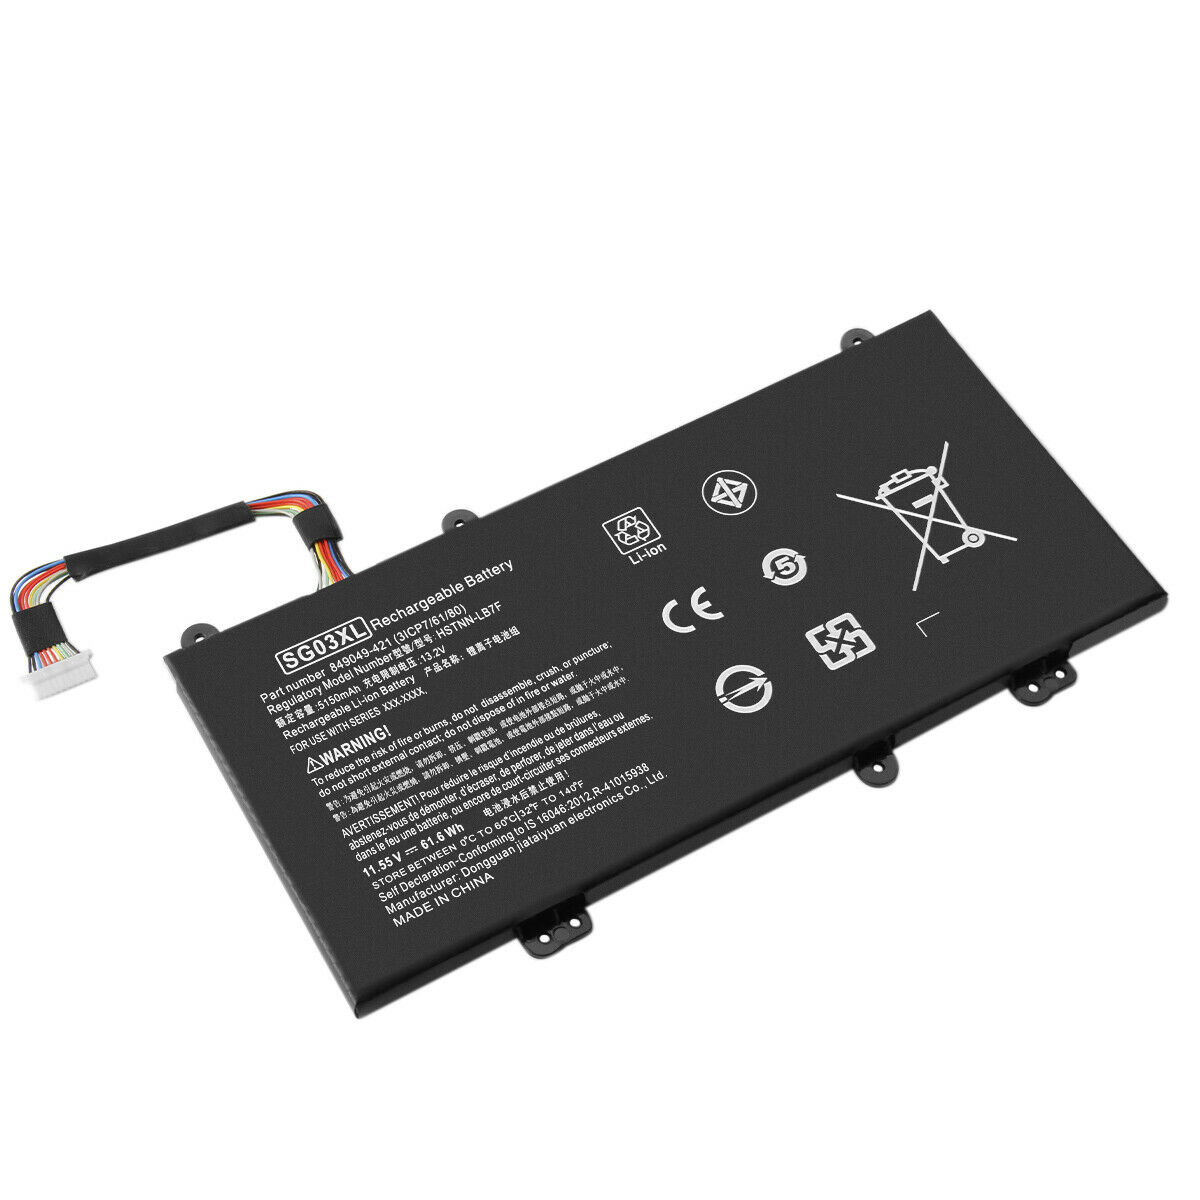 Batería para HP SG03XL SG03041XL SG03061XL SGO3XL TPN-I126 HSTNN-LB7E HSTNN-LB7F(compatible)